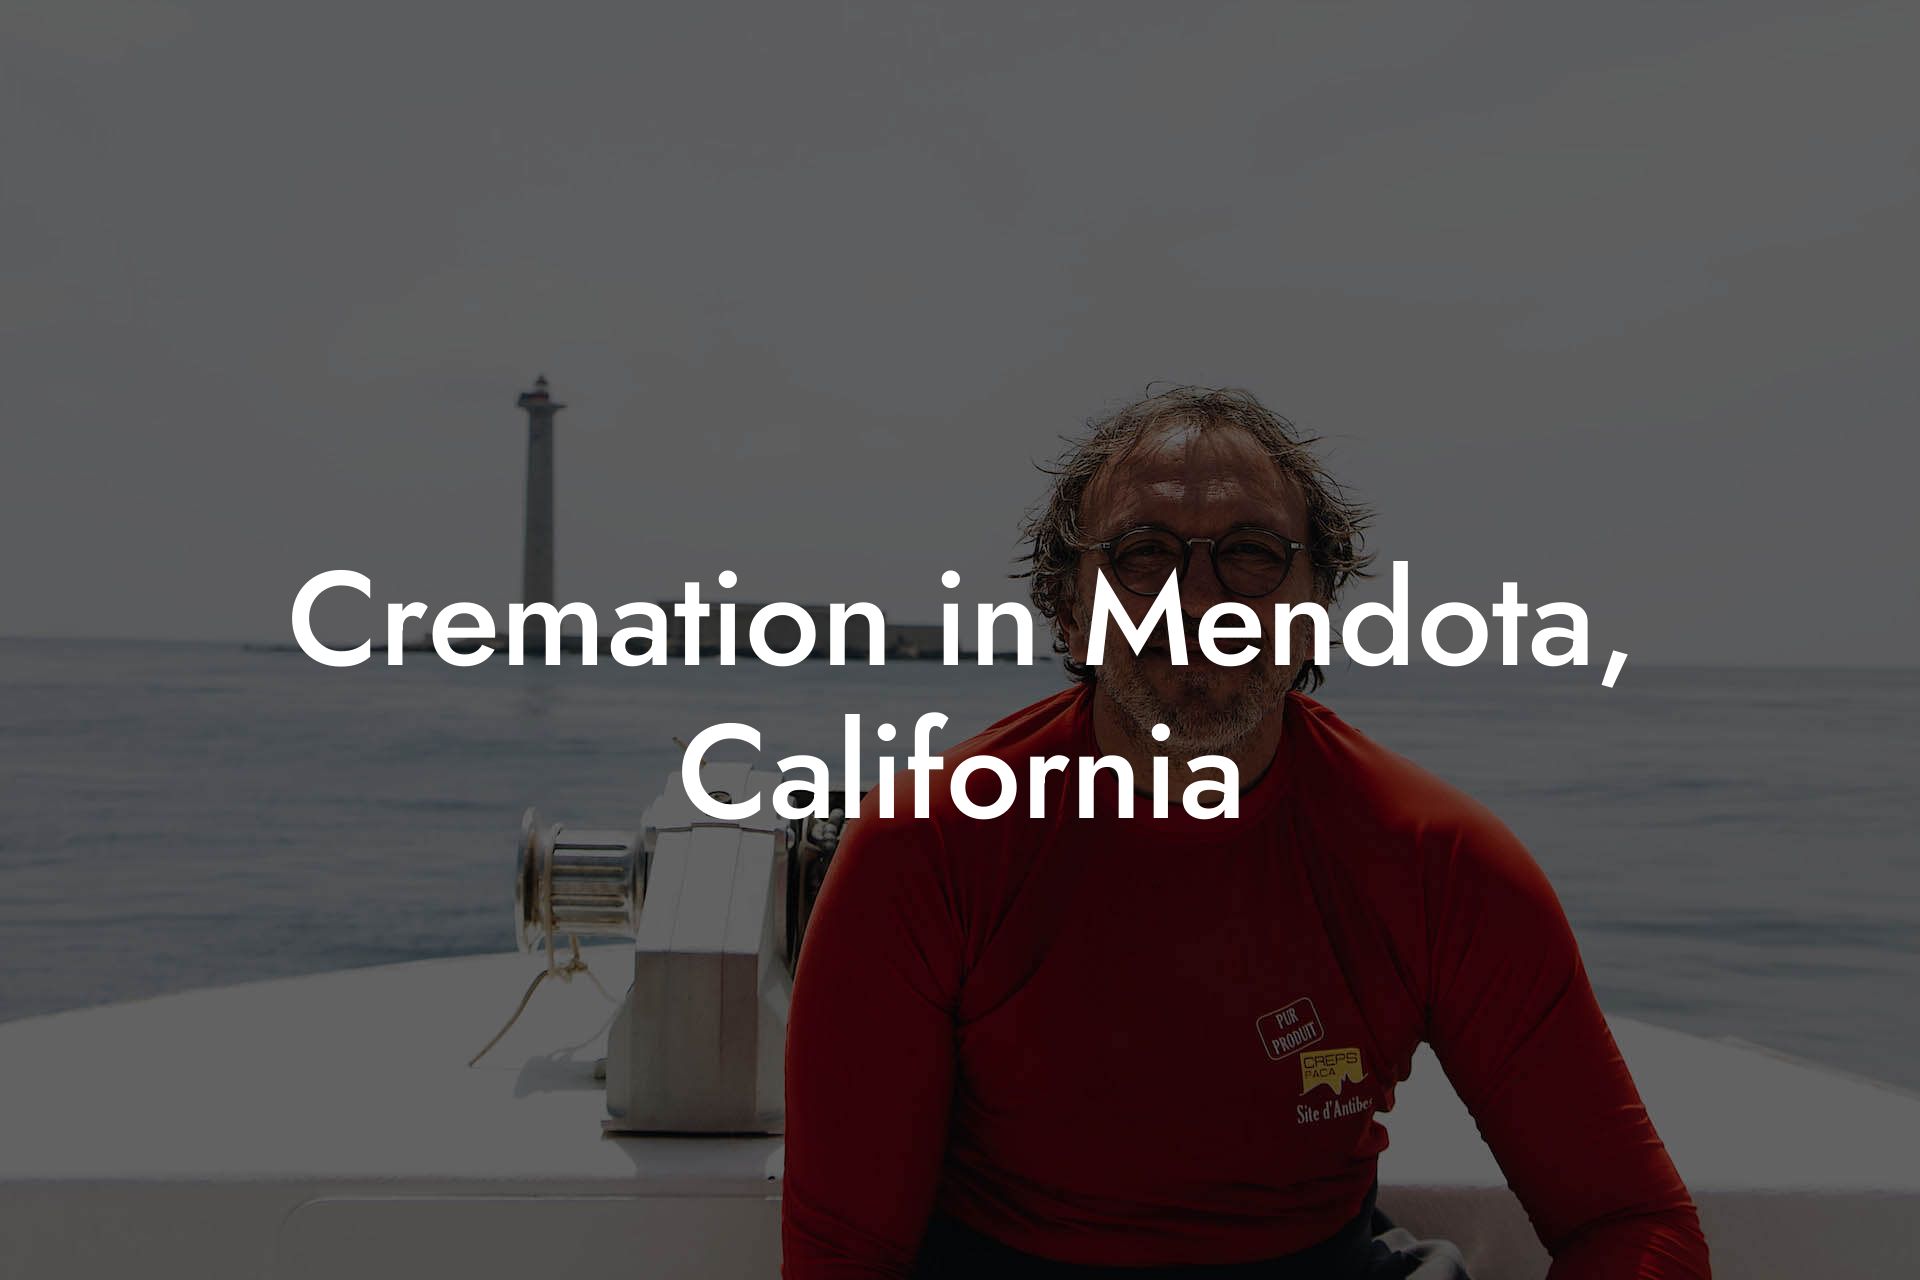 Cremation in Mendota, California